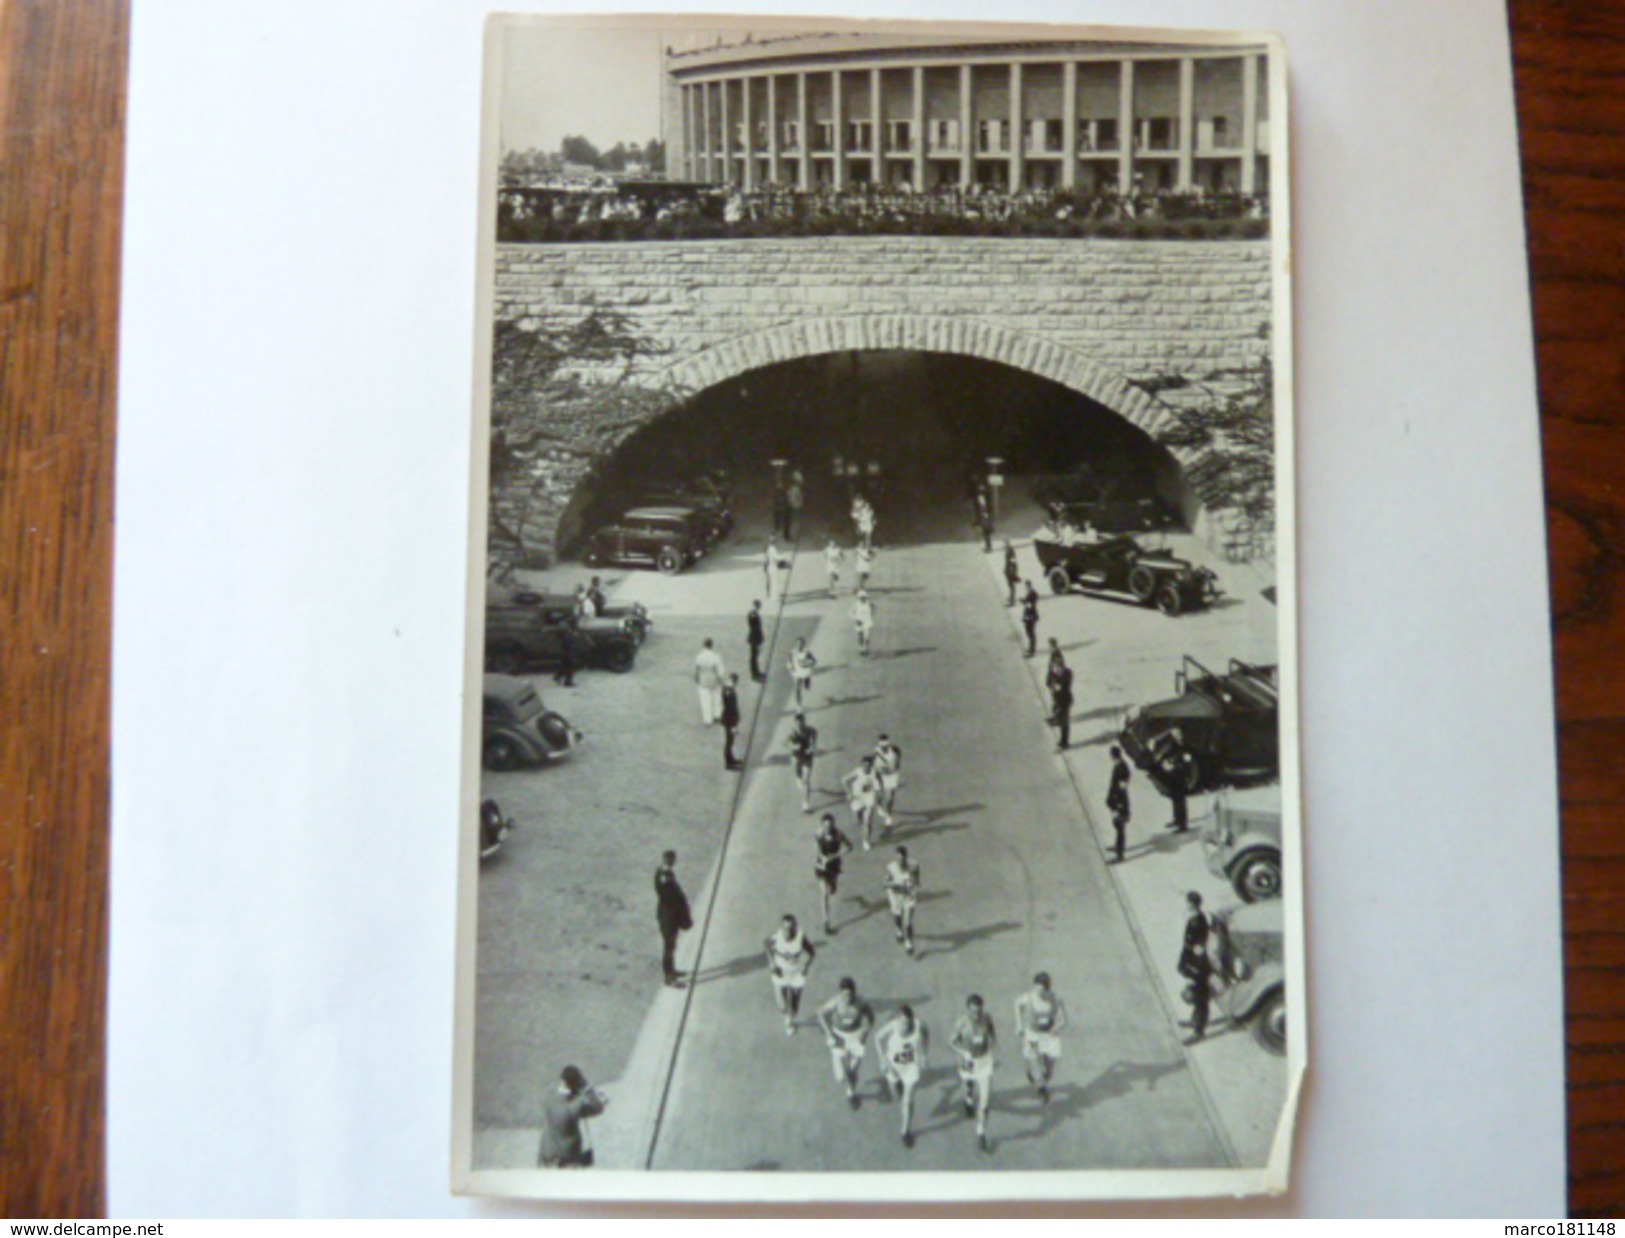 OLYMPIA 1936 - Band II - Bild Nr 63 Gruppe 59 - Marathon - Sport